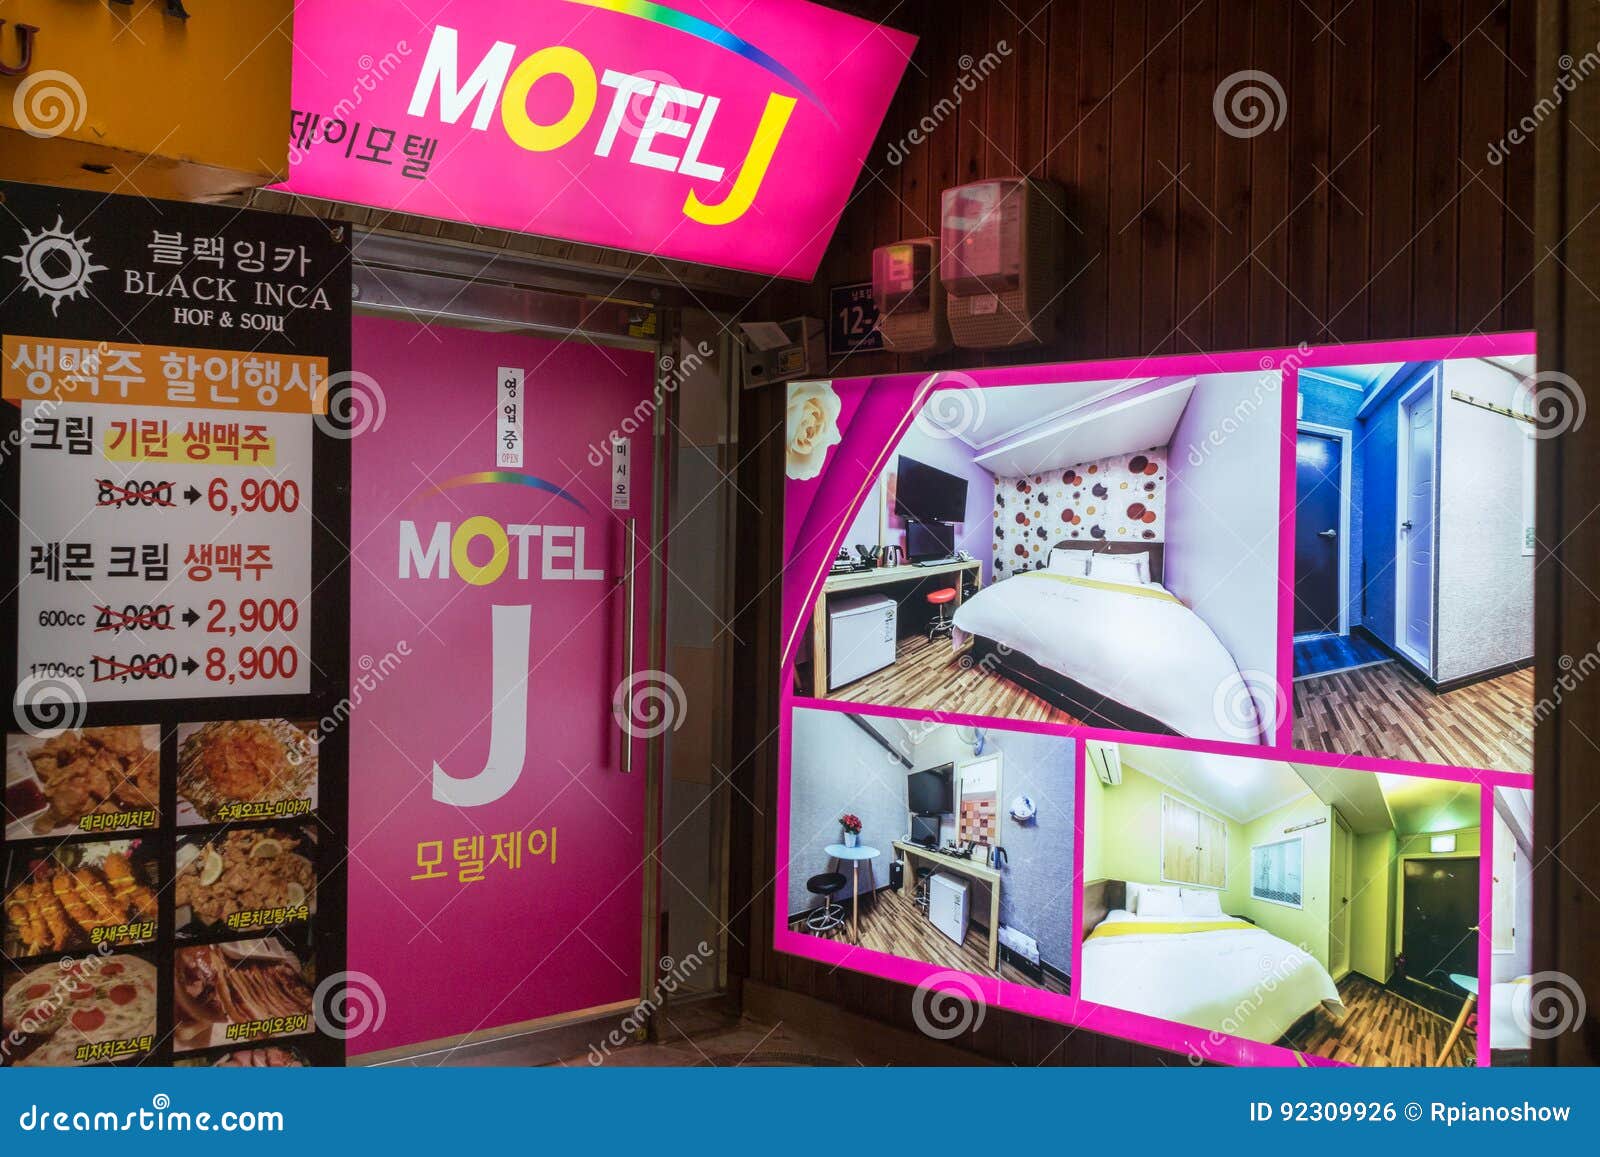 korean motel home made